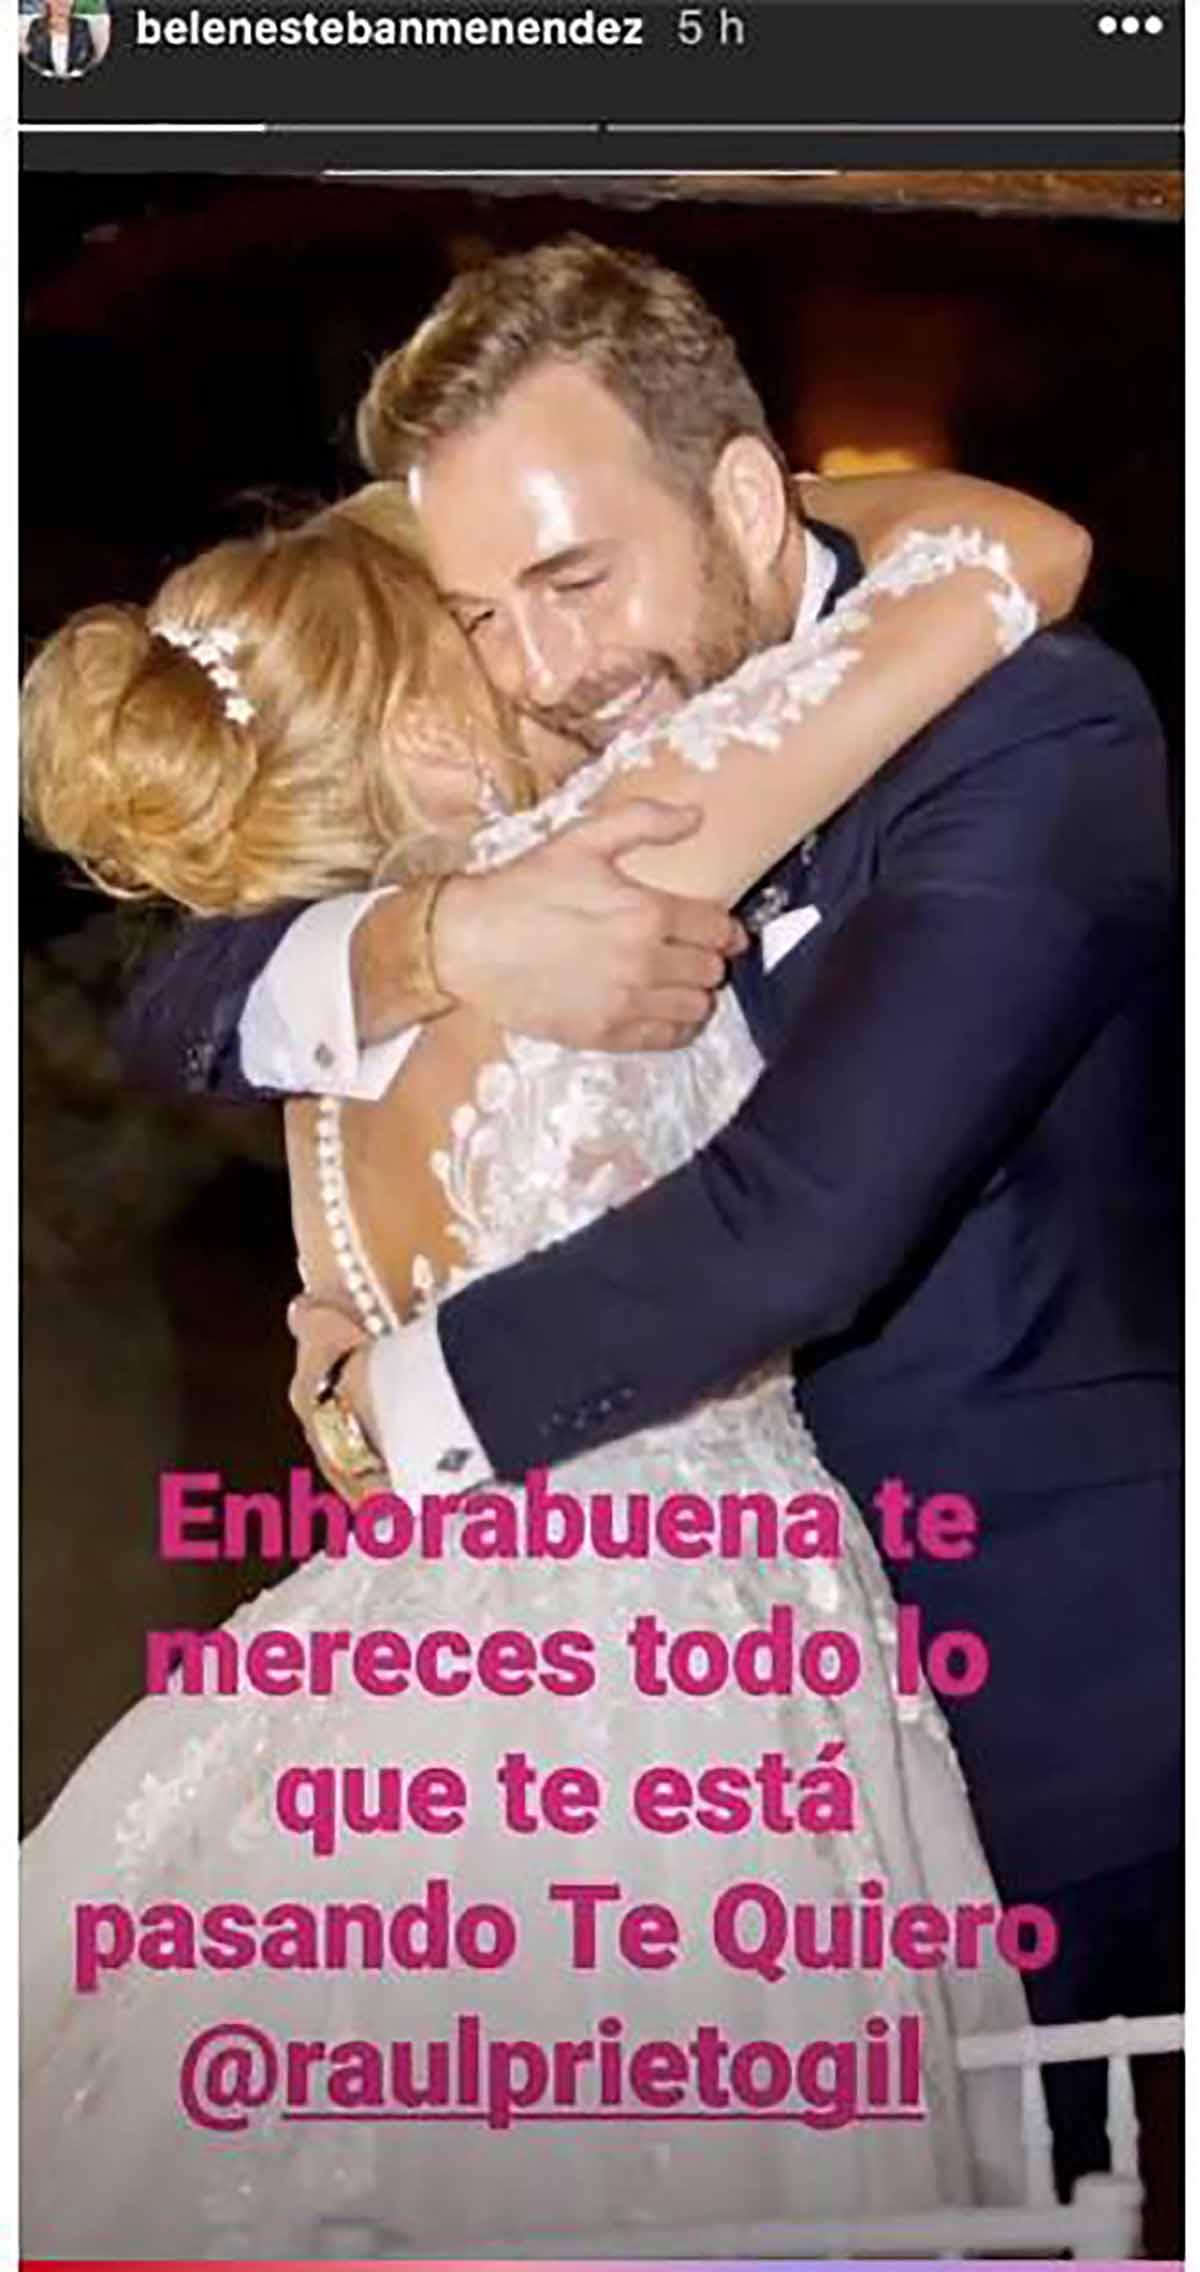 Belén Esteban no ha dudado en felicitar a su amigo por su nuevo éxito profesional / Instagram